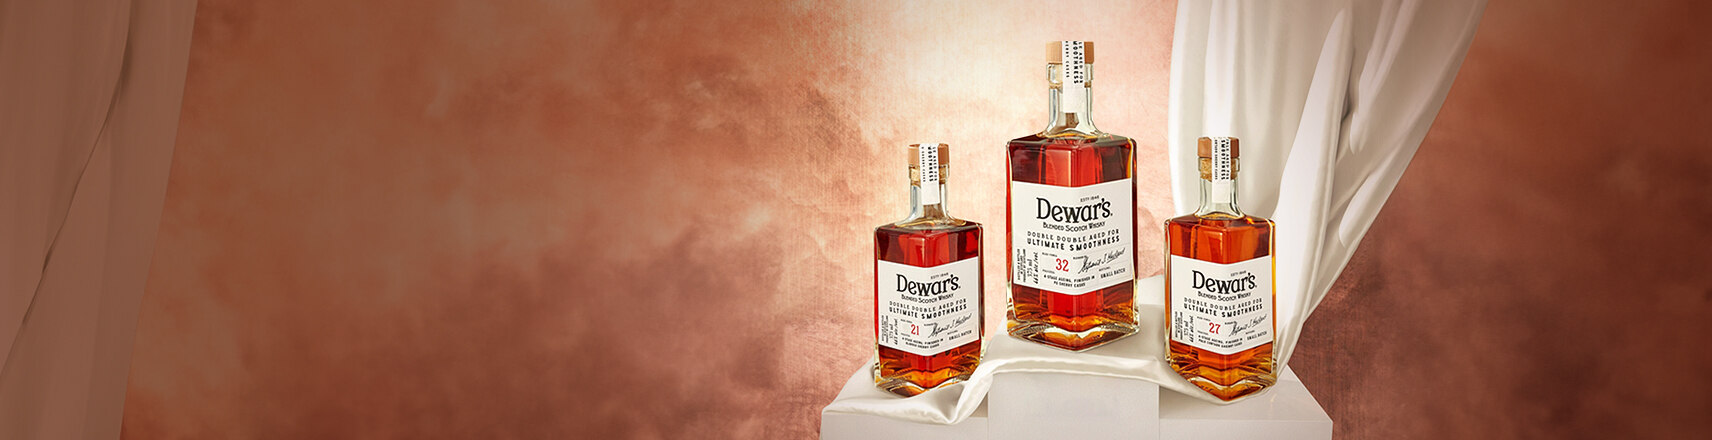 Dewar's 混合威士忌的王者